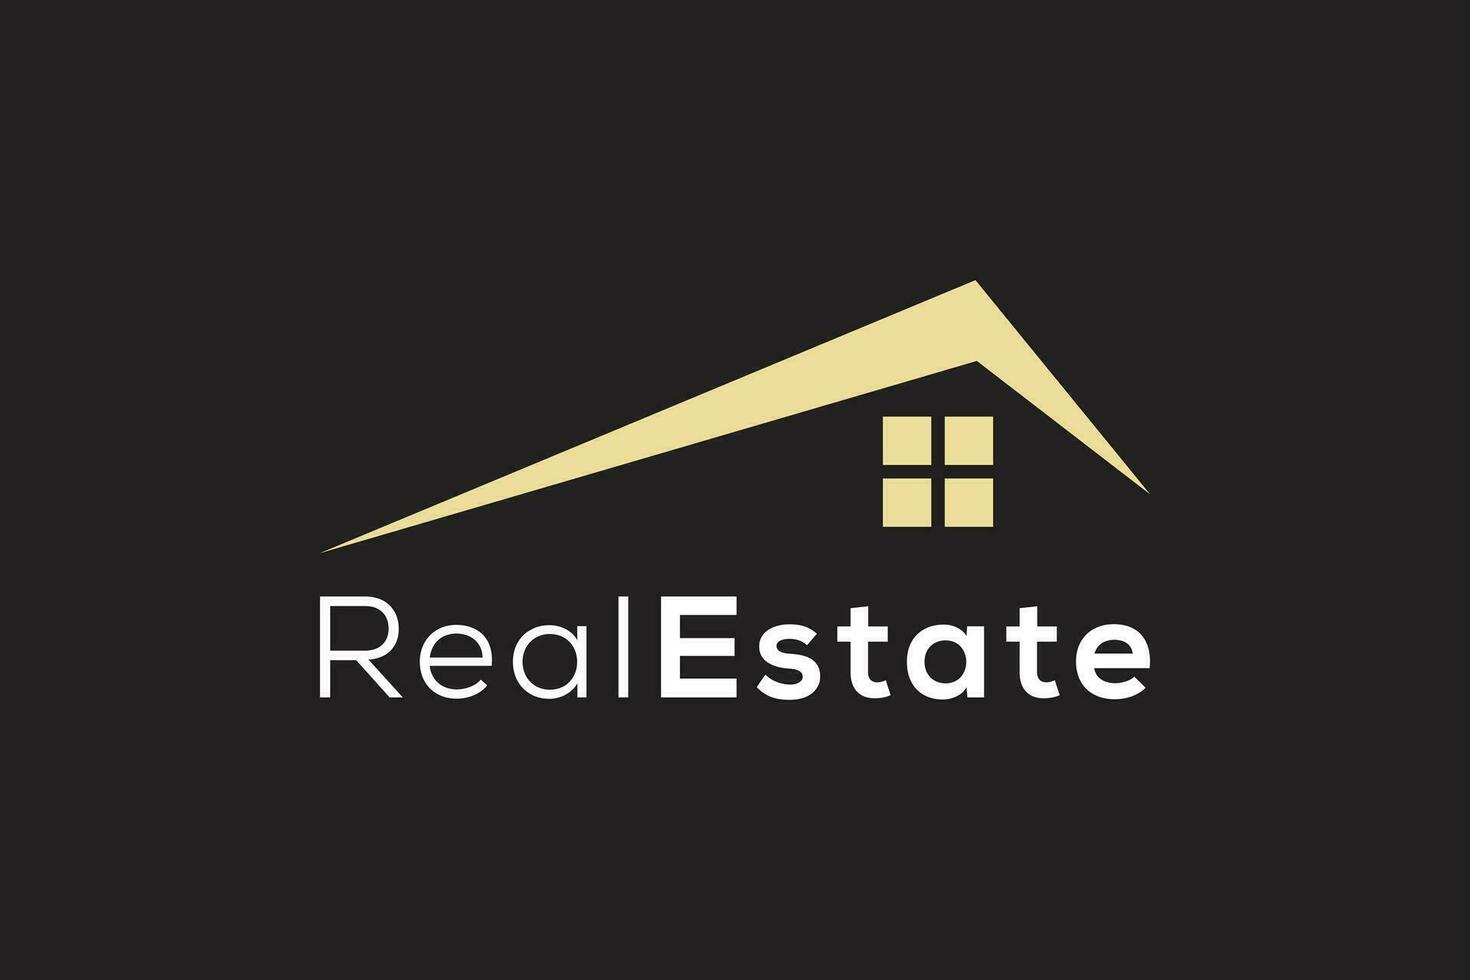 Real estate gold logo design vector template